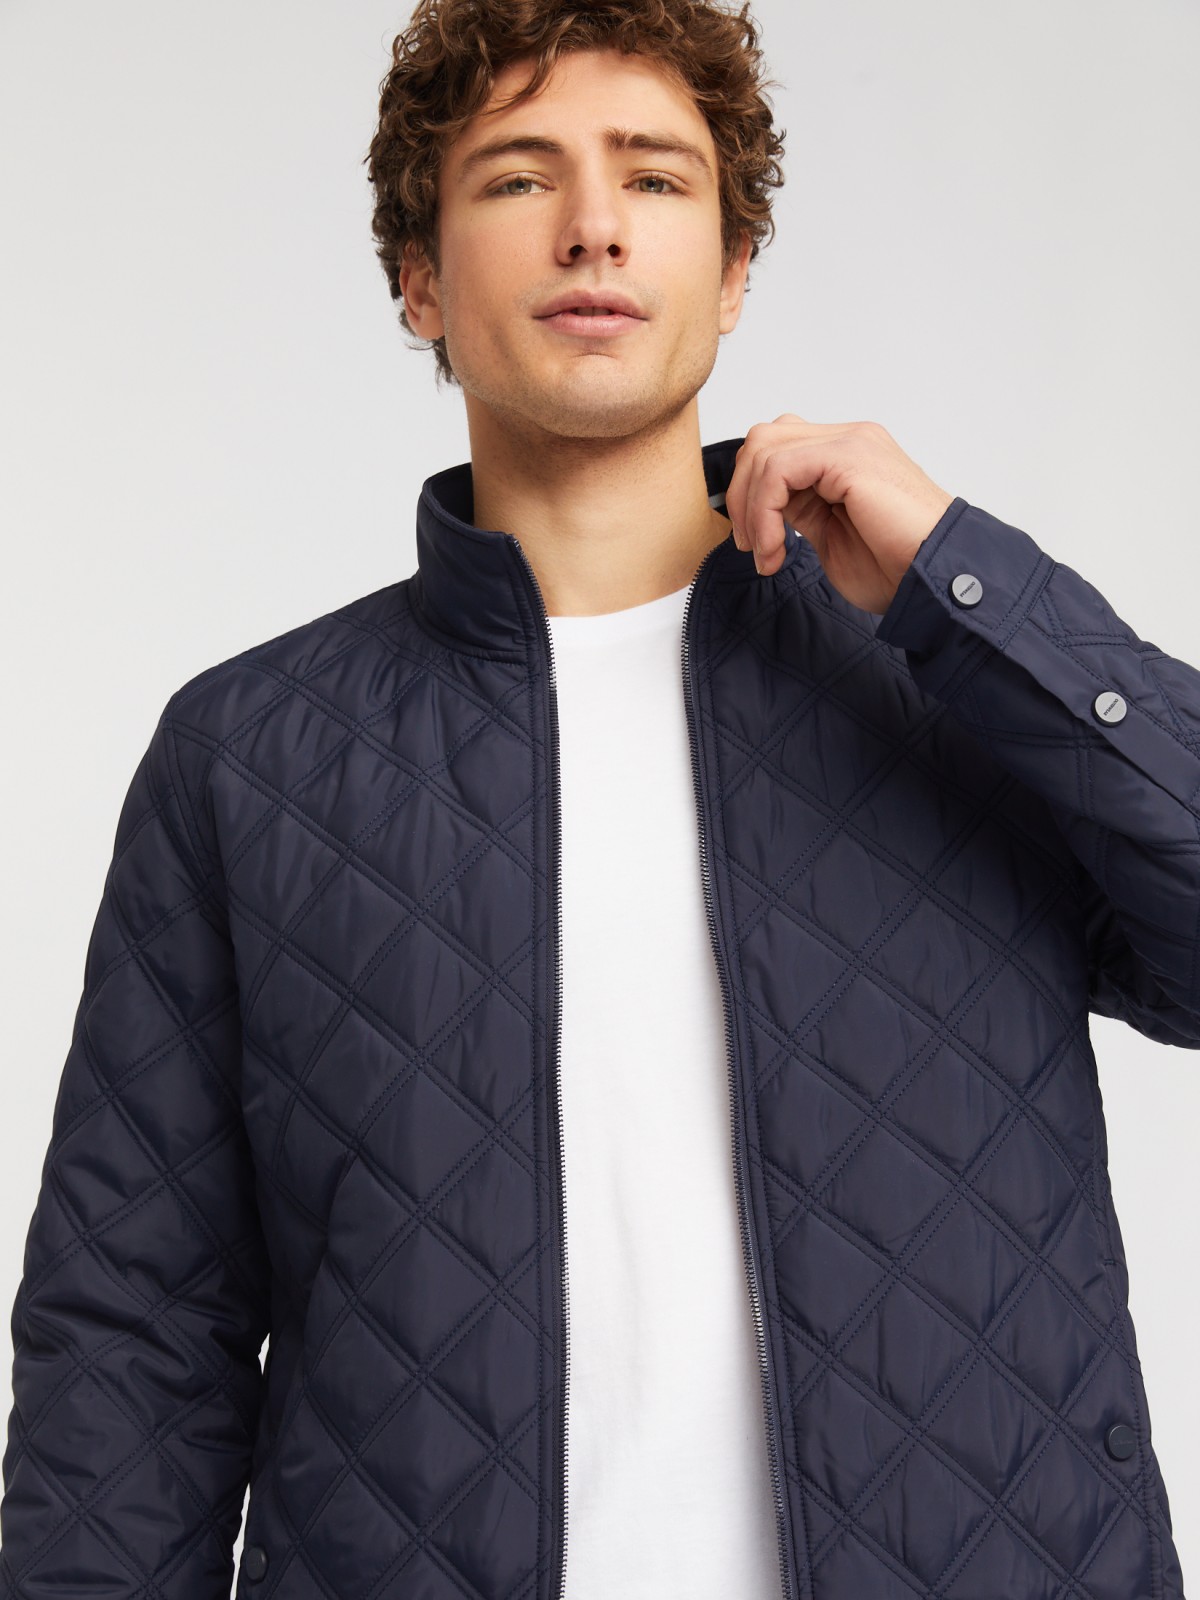 Утеплённая куртка на молнии с воротником-стойкой zolla 014135159124, цвет темно-синий, размер M - фото 3